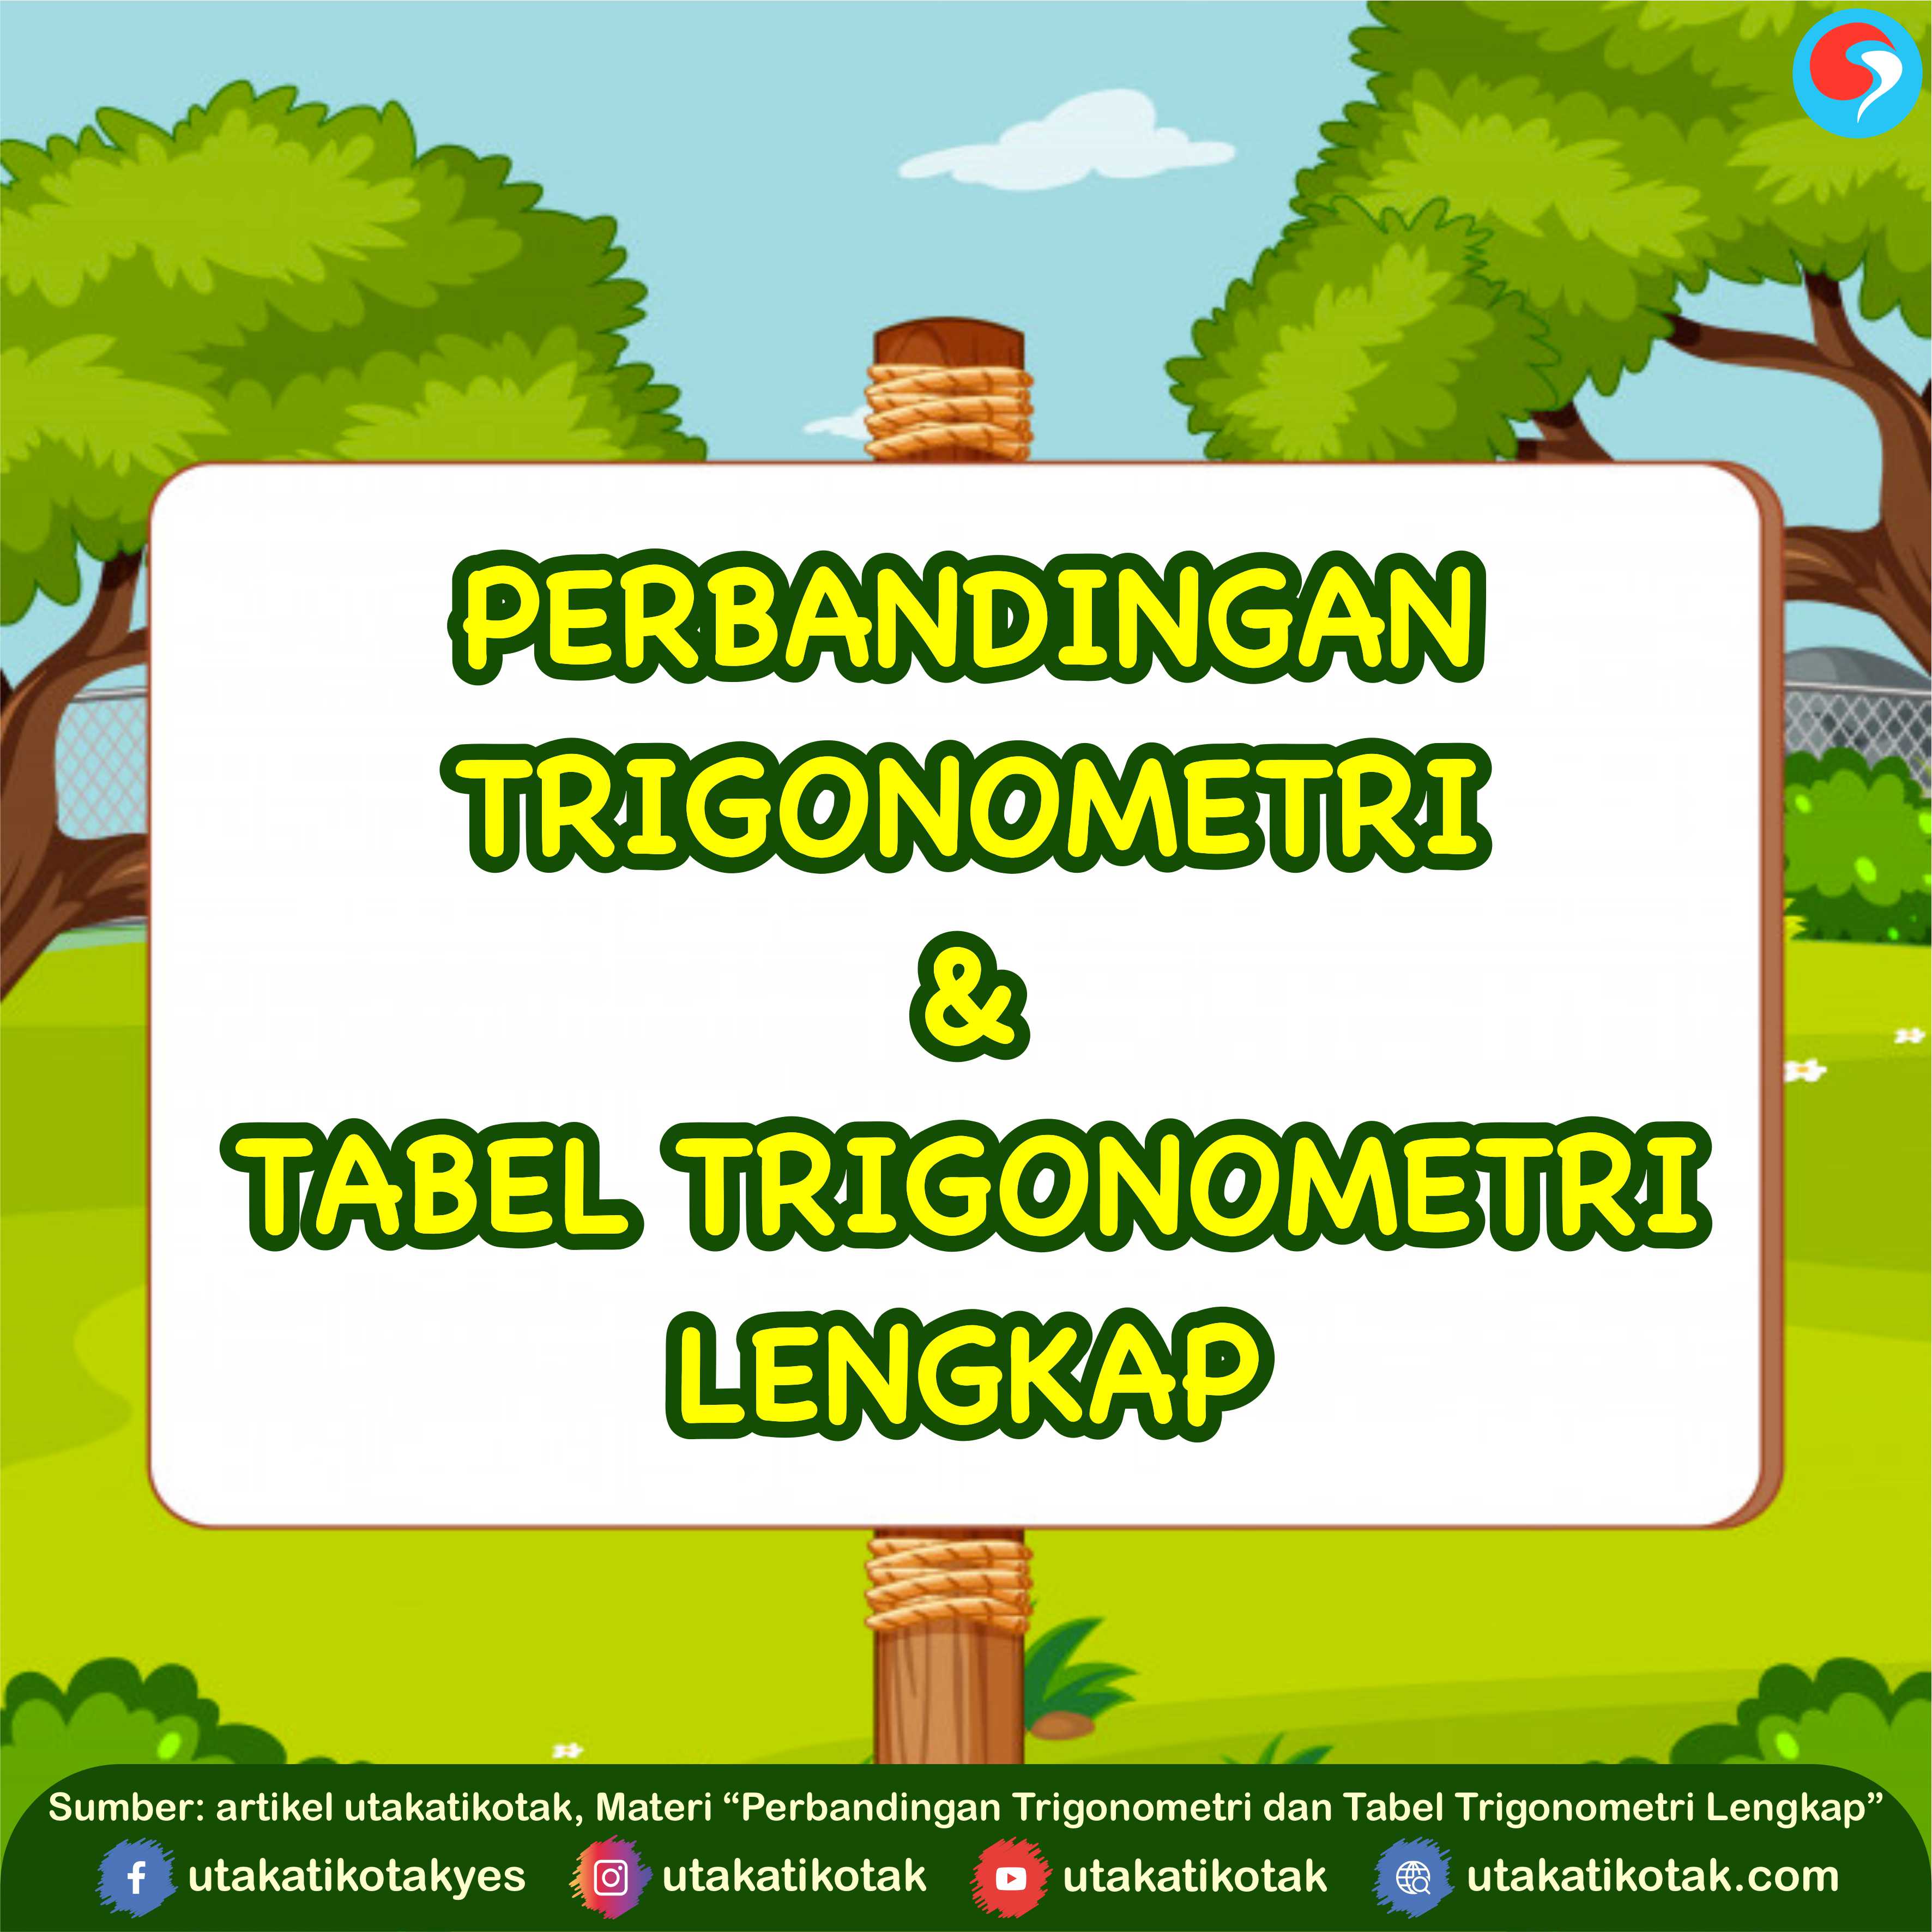 Perbandingan Trigonometri dan Tabel Trigonometri Lengkap